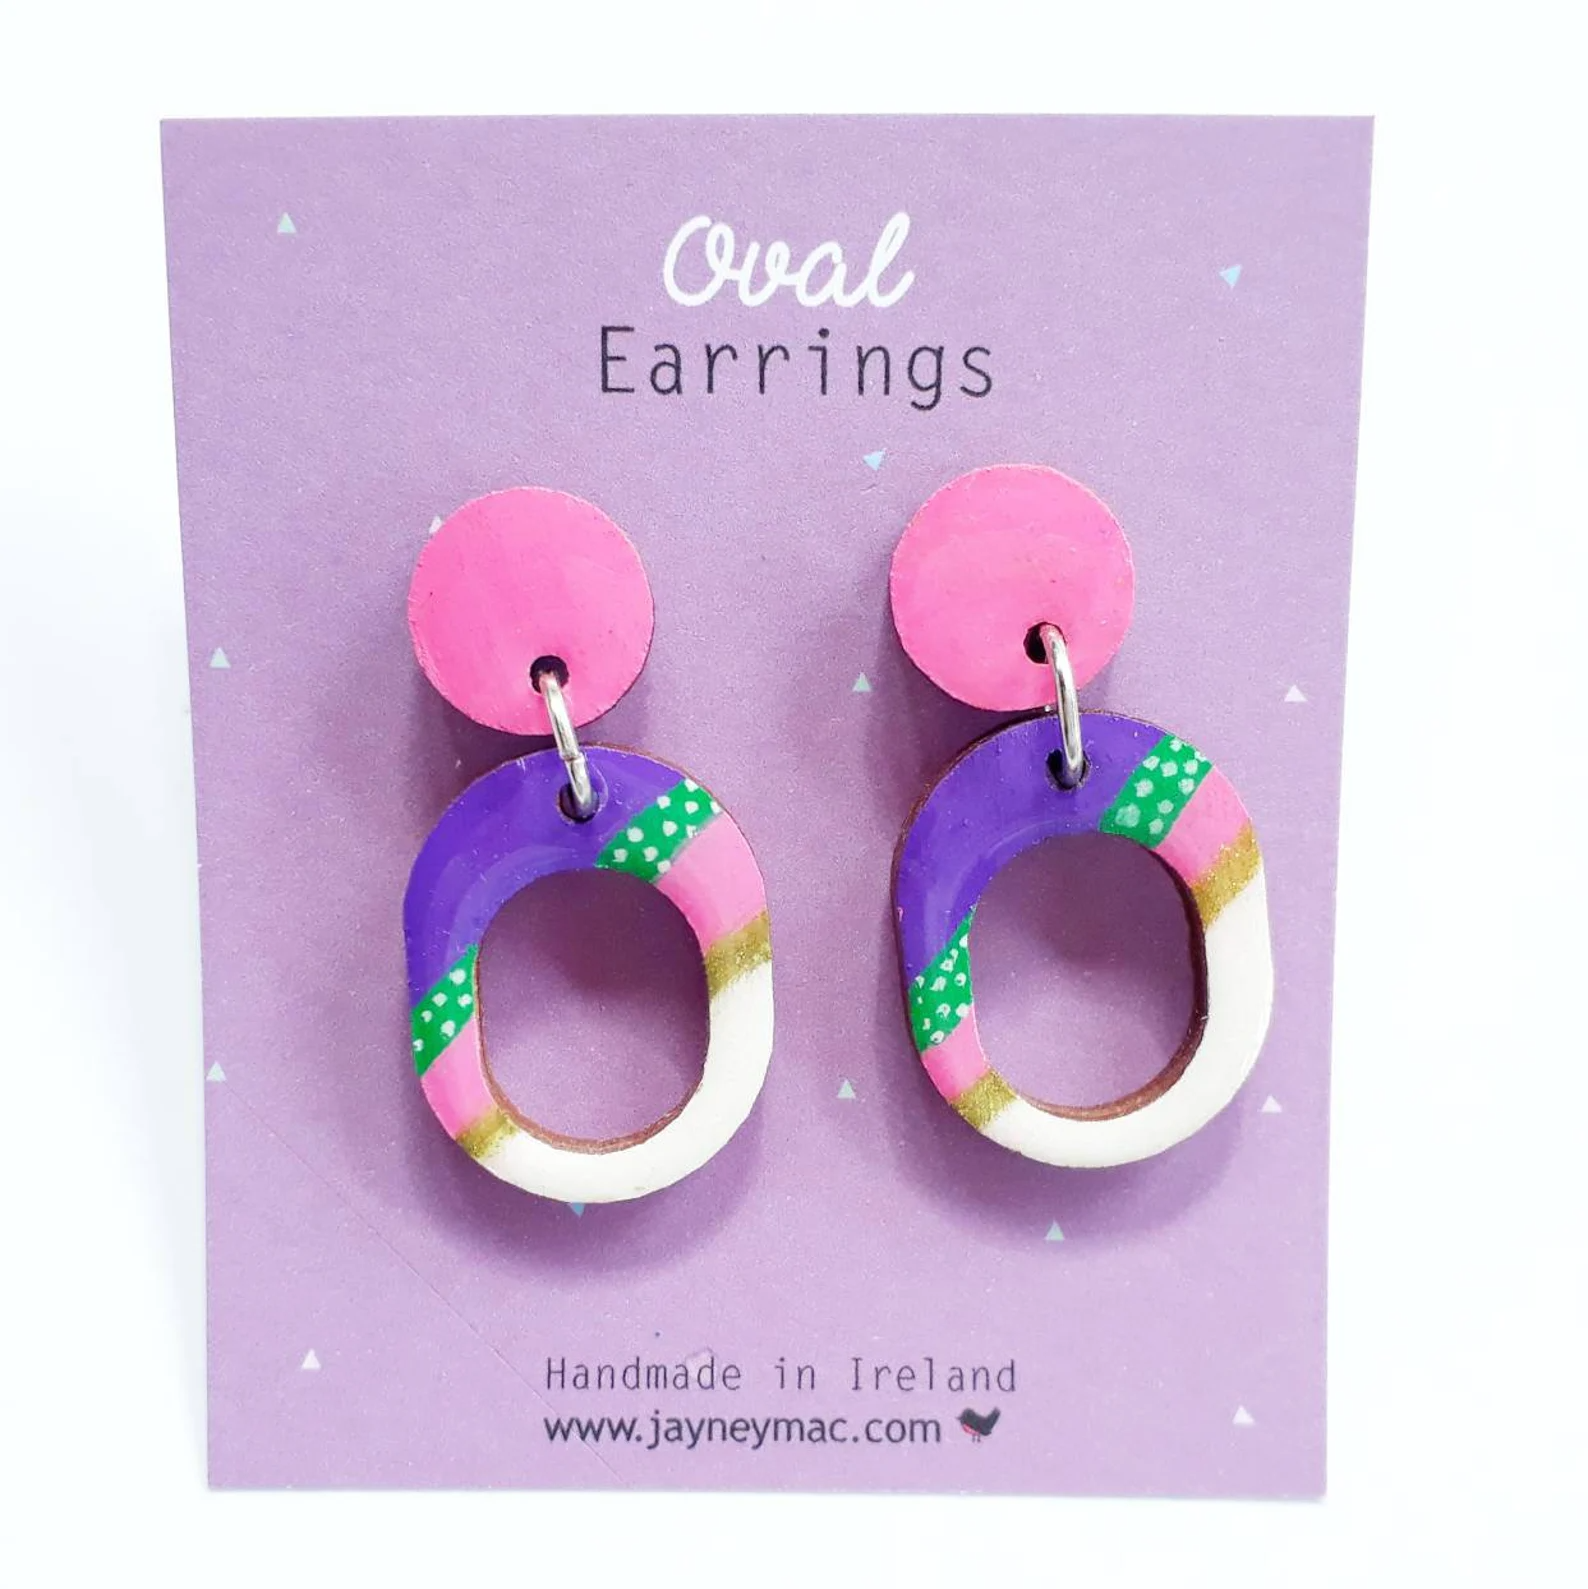 Jayney Mac Earrings - Wooden Oval Pattern Pink/Purple